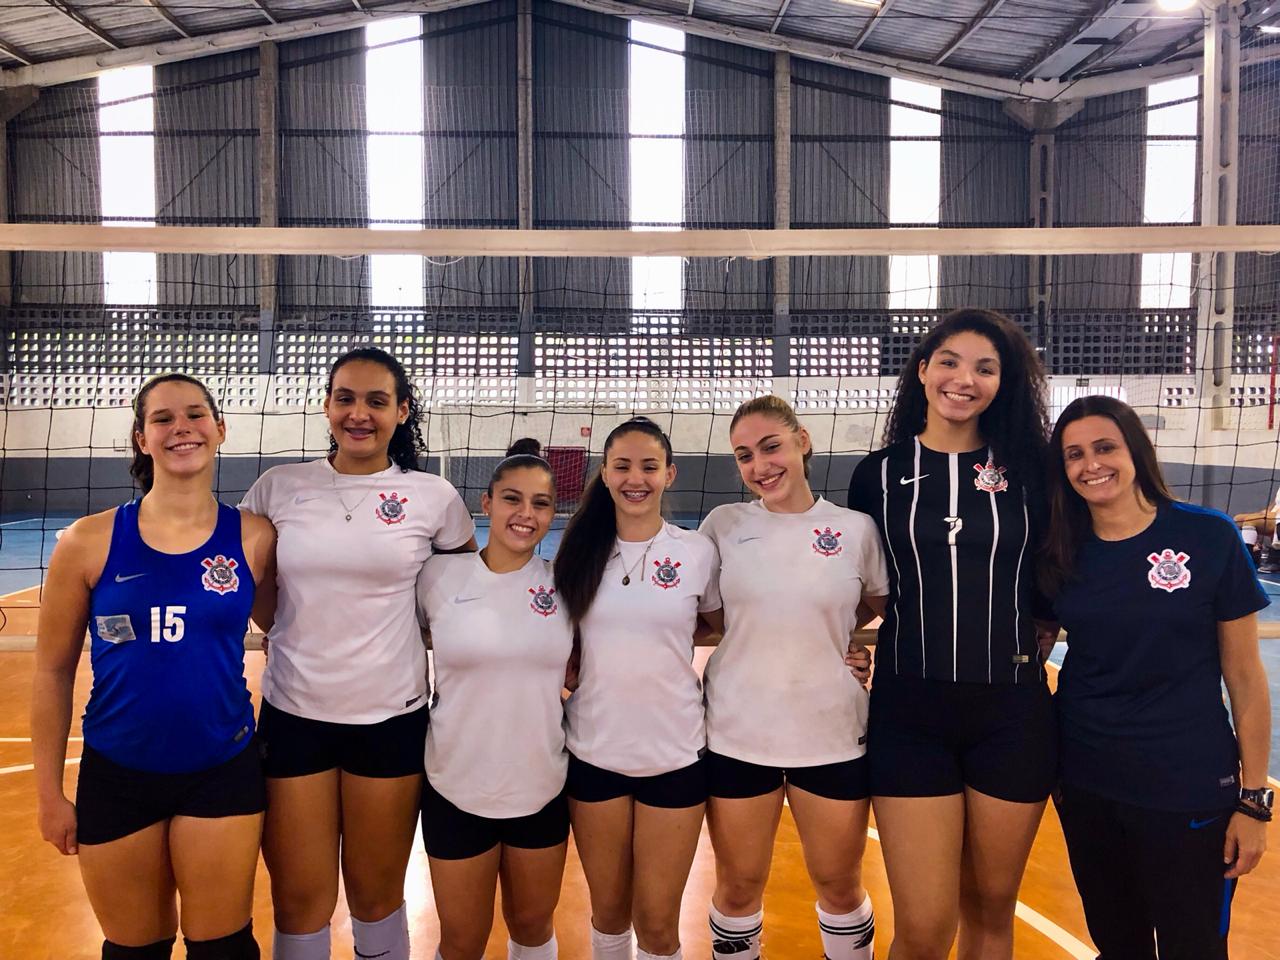 Equipes de base do Corinthians vão atuar pelo Campeonato Paulista de Vôlei  Feminino